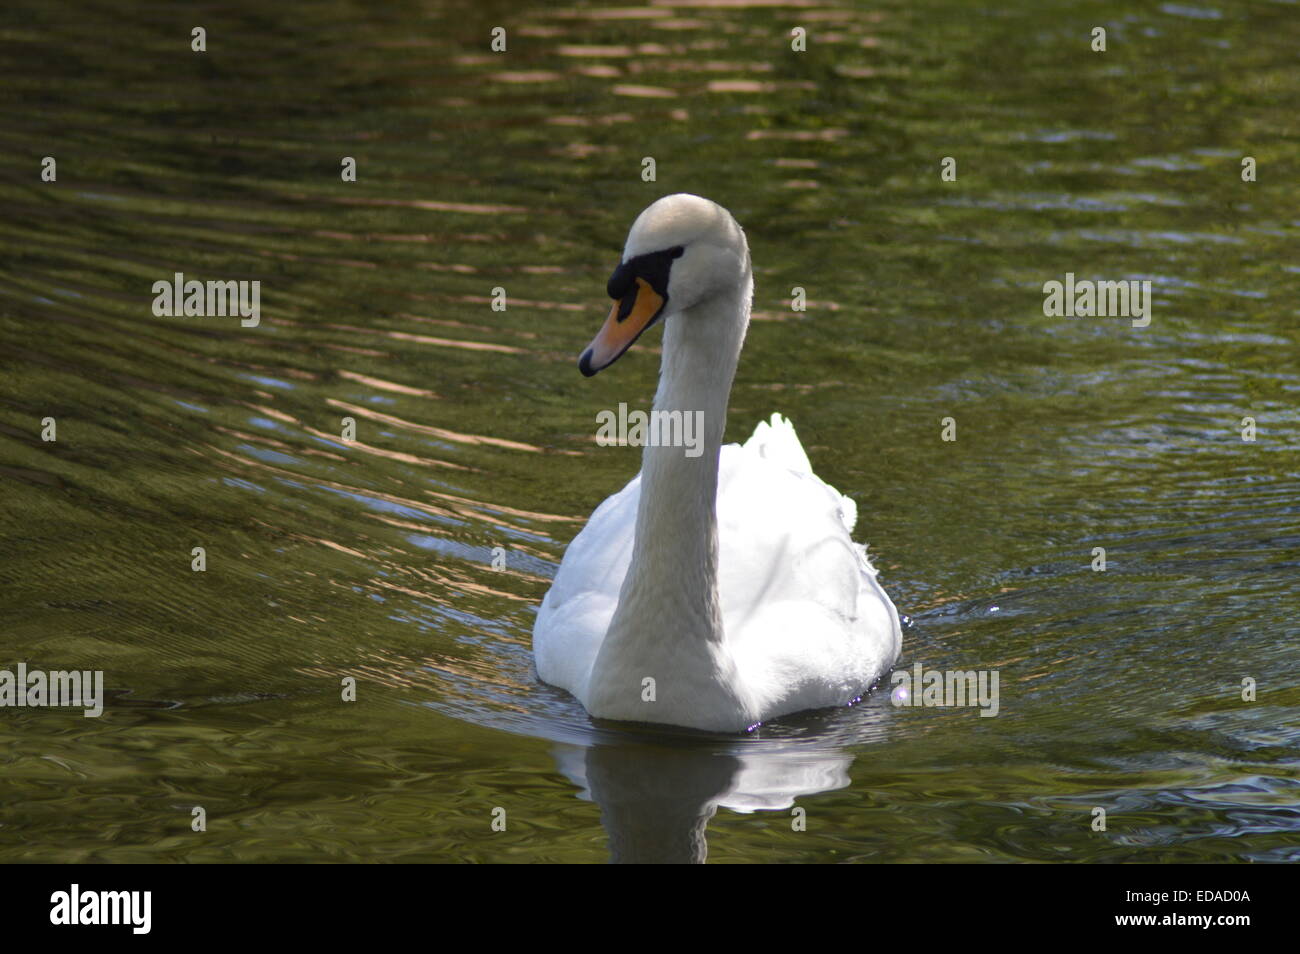 White swan swimming in dark water Stock Photo